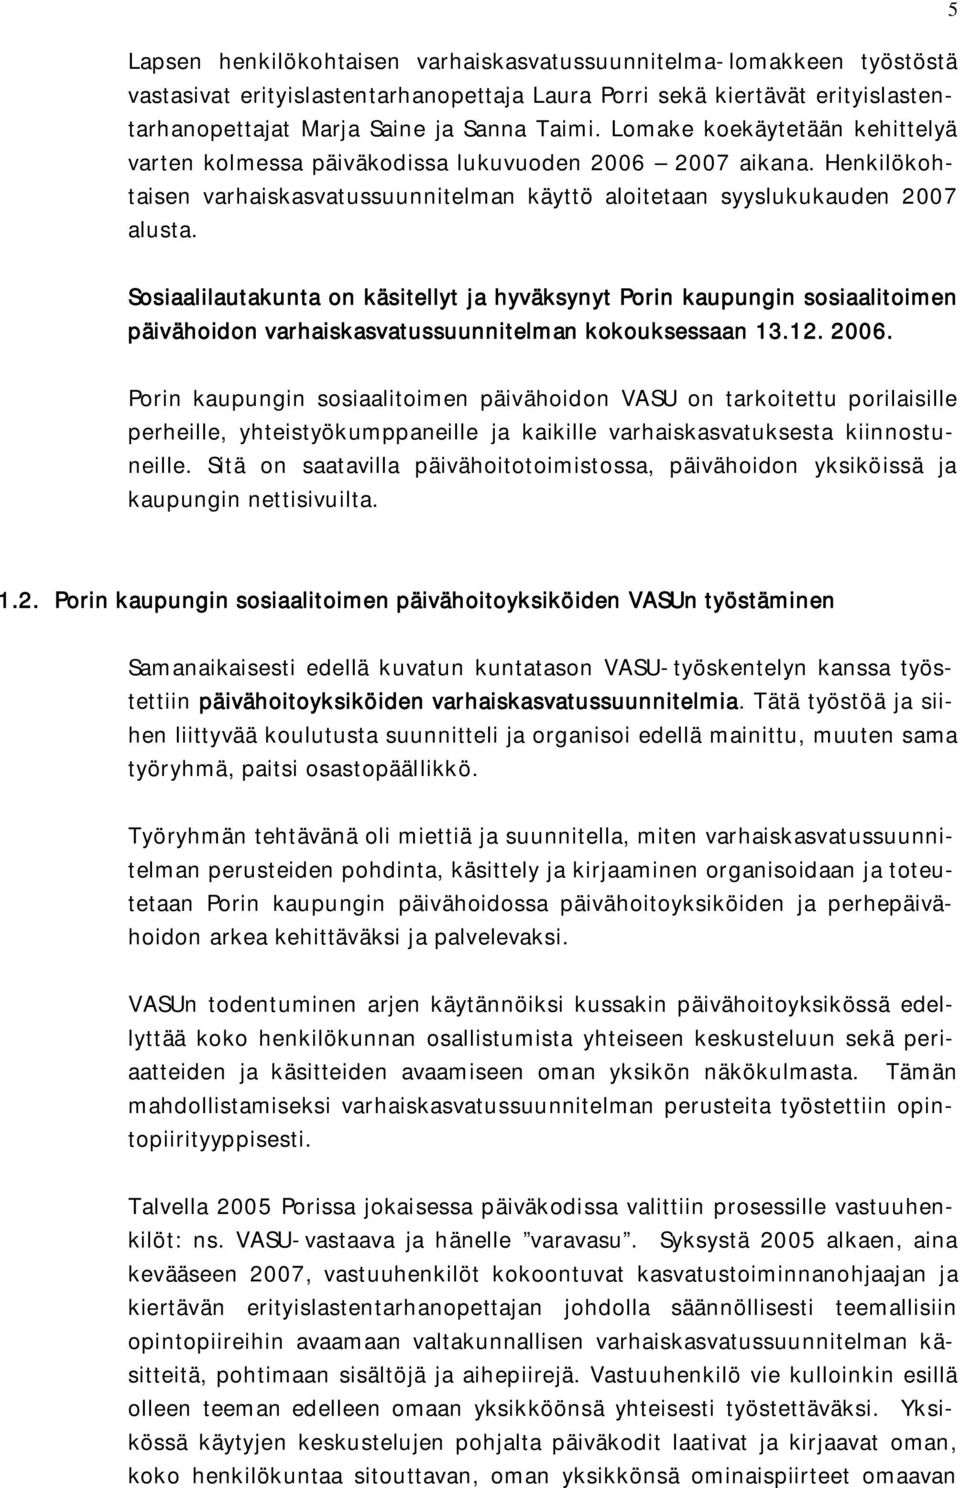 Sosiaalilautakunta on käsitellyt ja hyväksynyt Porin kaupungin sosiaalitoimen päivähoidon varhaiskasvatussuunnitelman kokouksessaan 13.12. 2006.